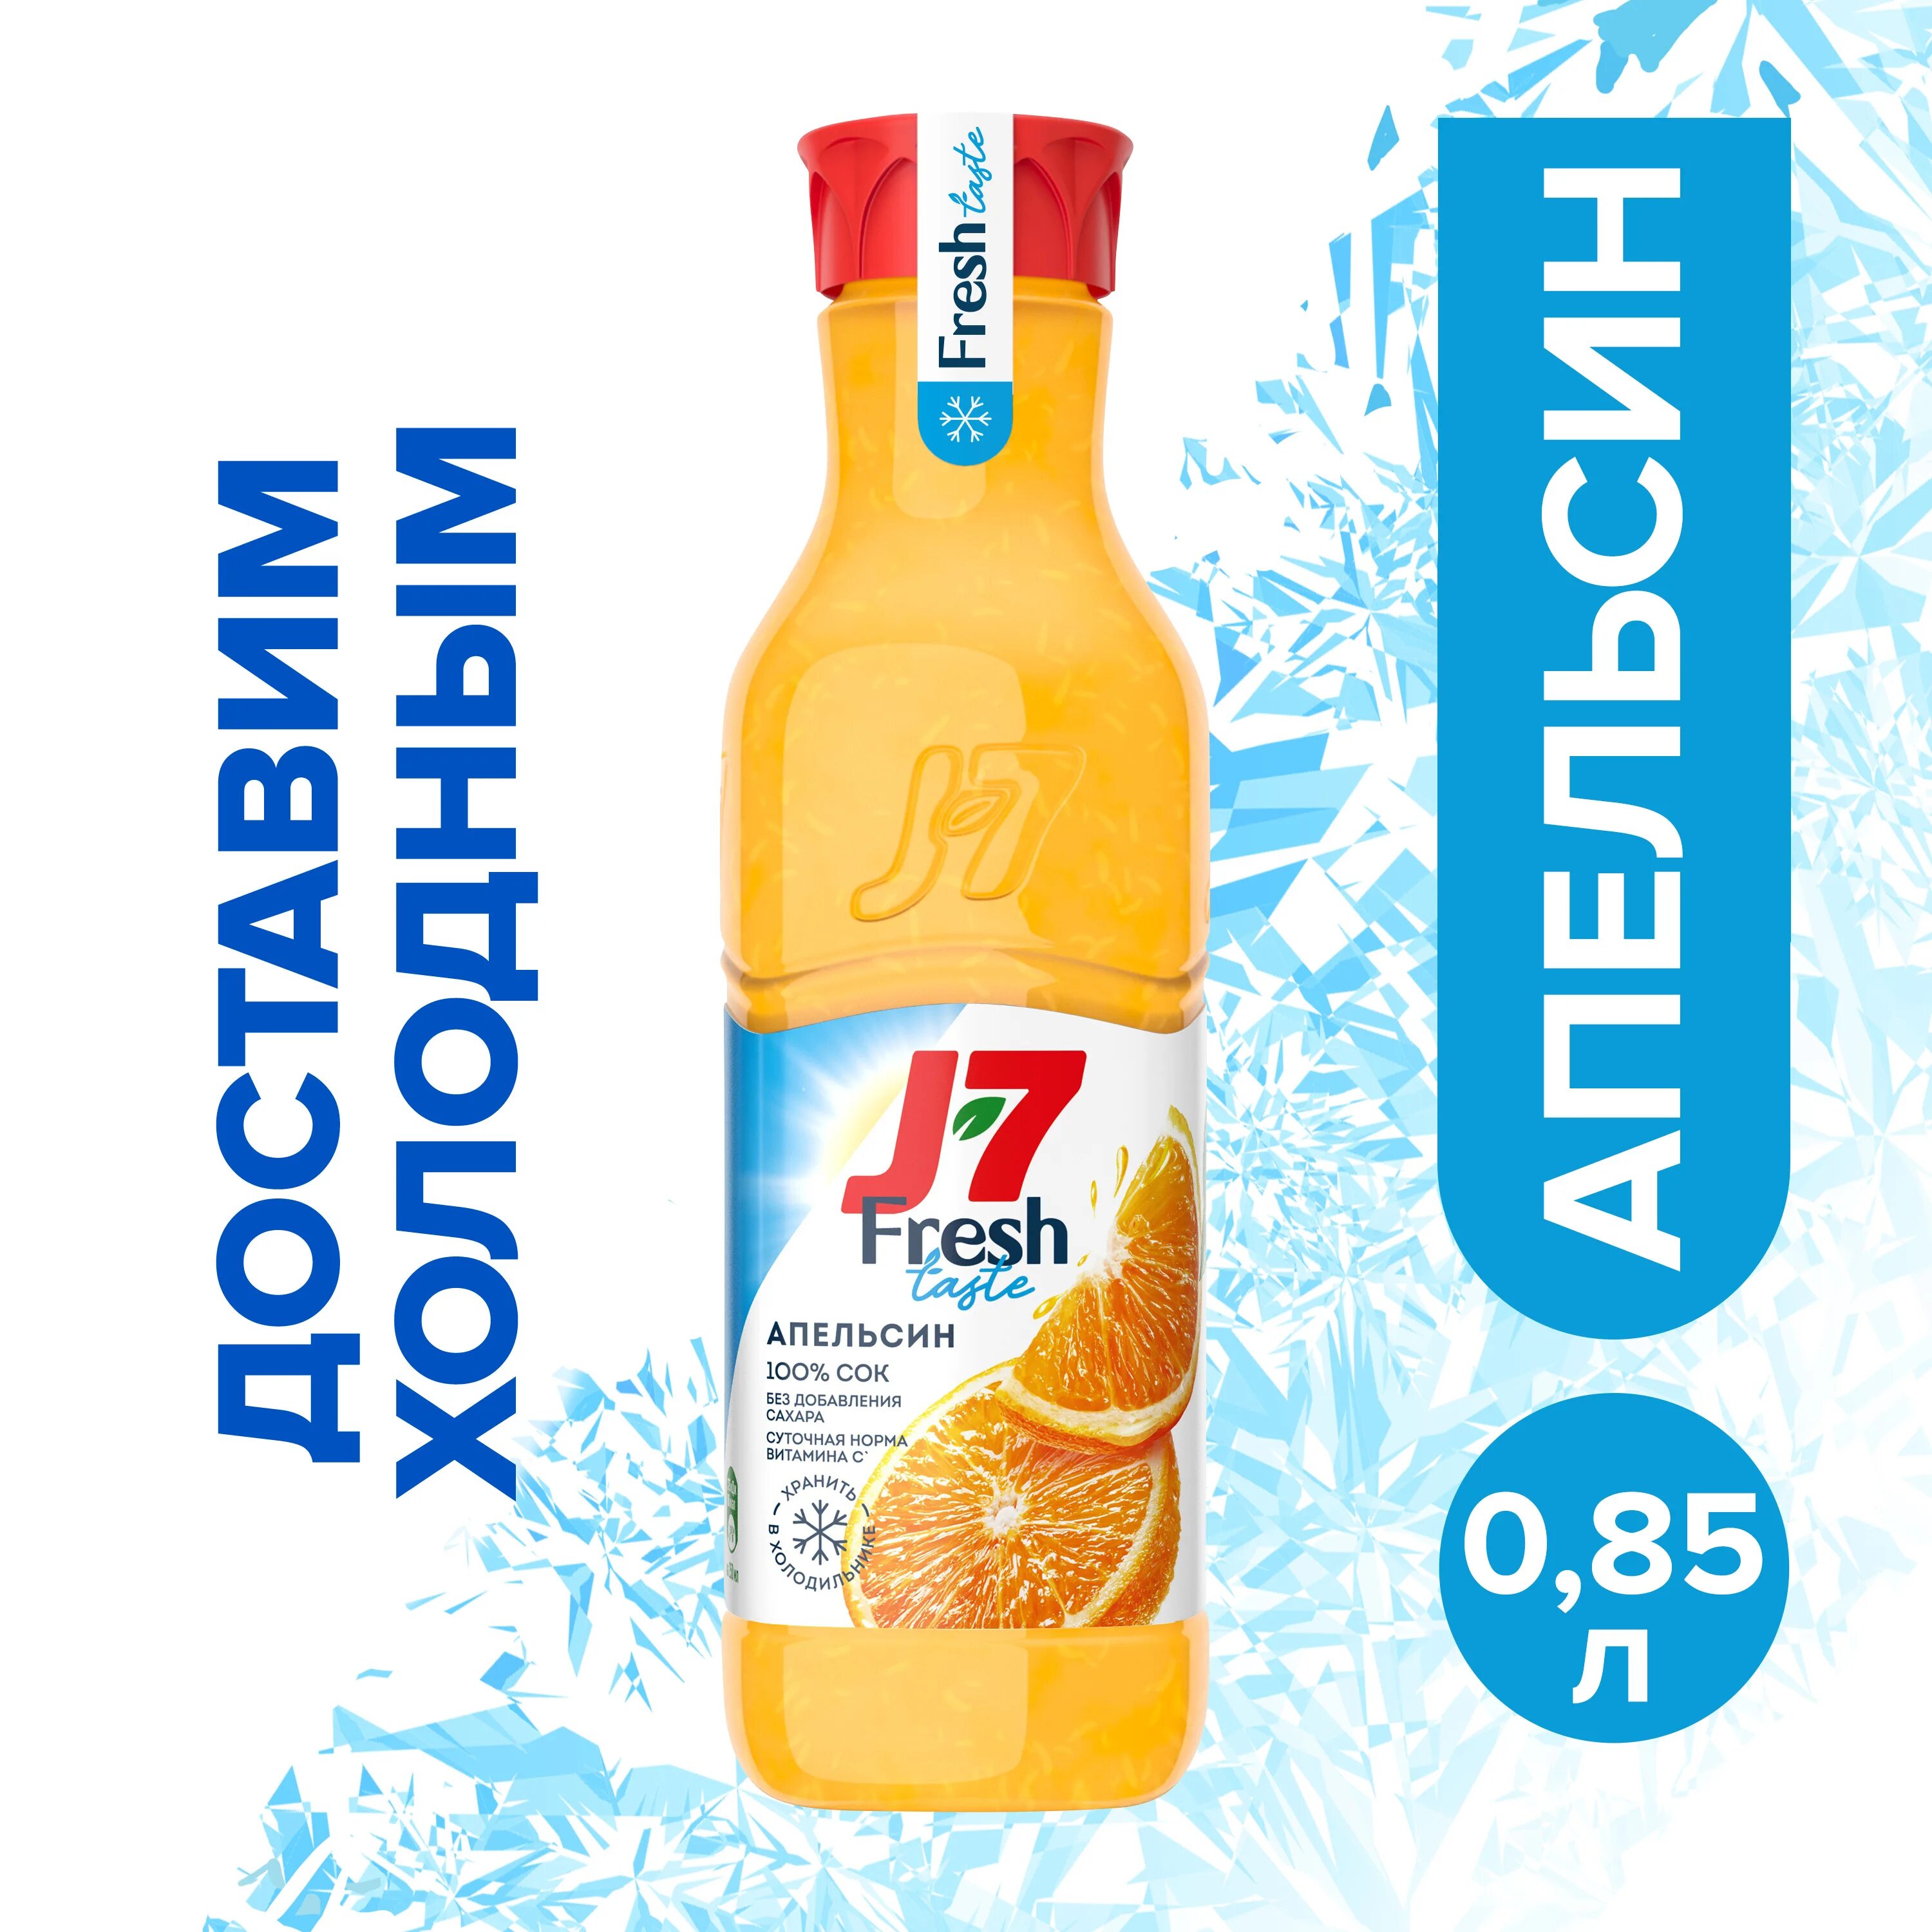 J7 fresh. Сок j7 Fresh taste. J7 Fresh taste сок апельсин с мякотью. Сок j7 апельсин 0,85. J7 Fresh taste апельсин.